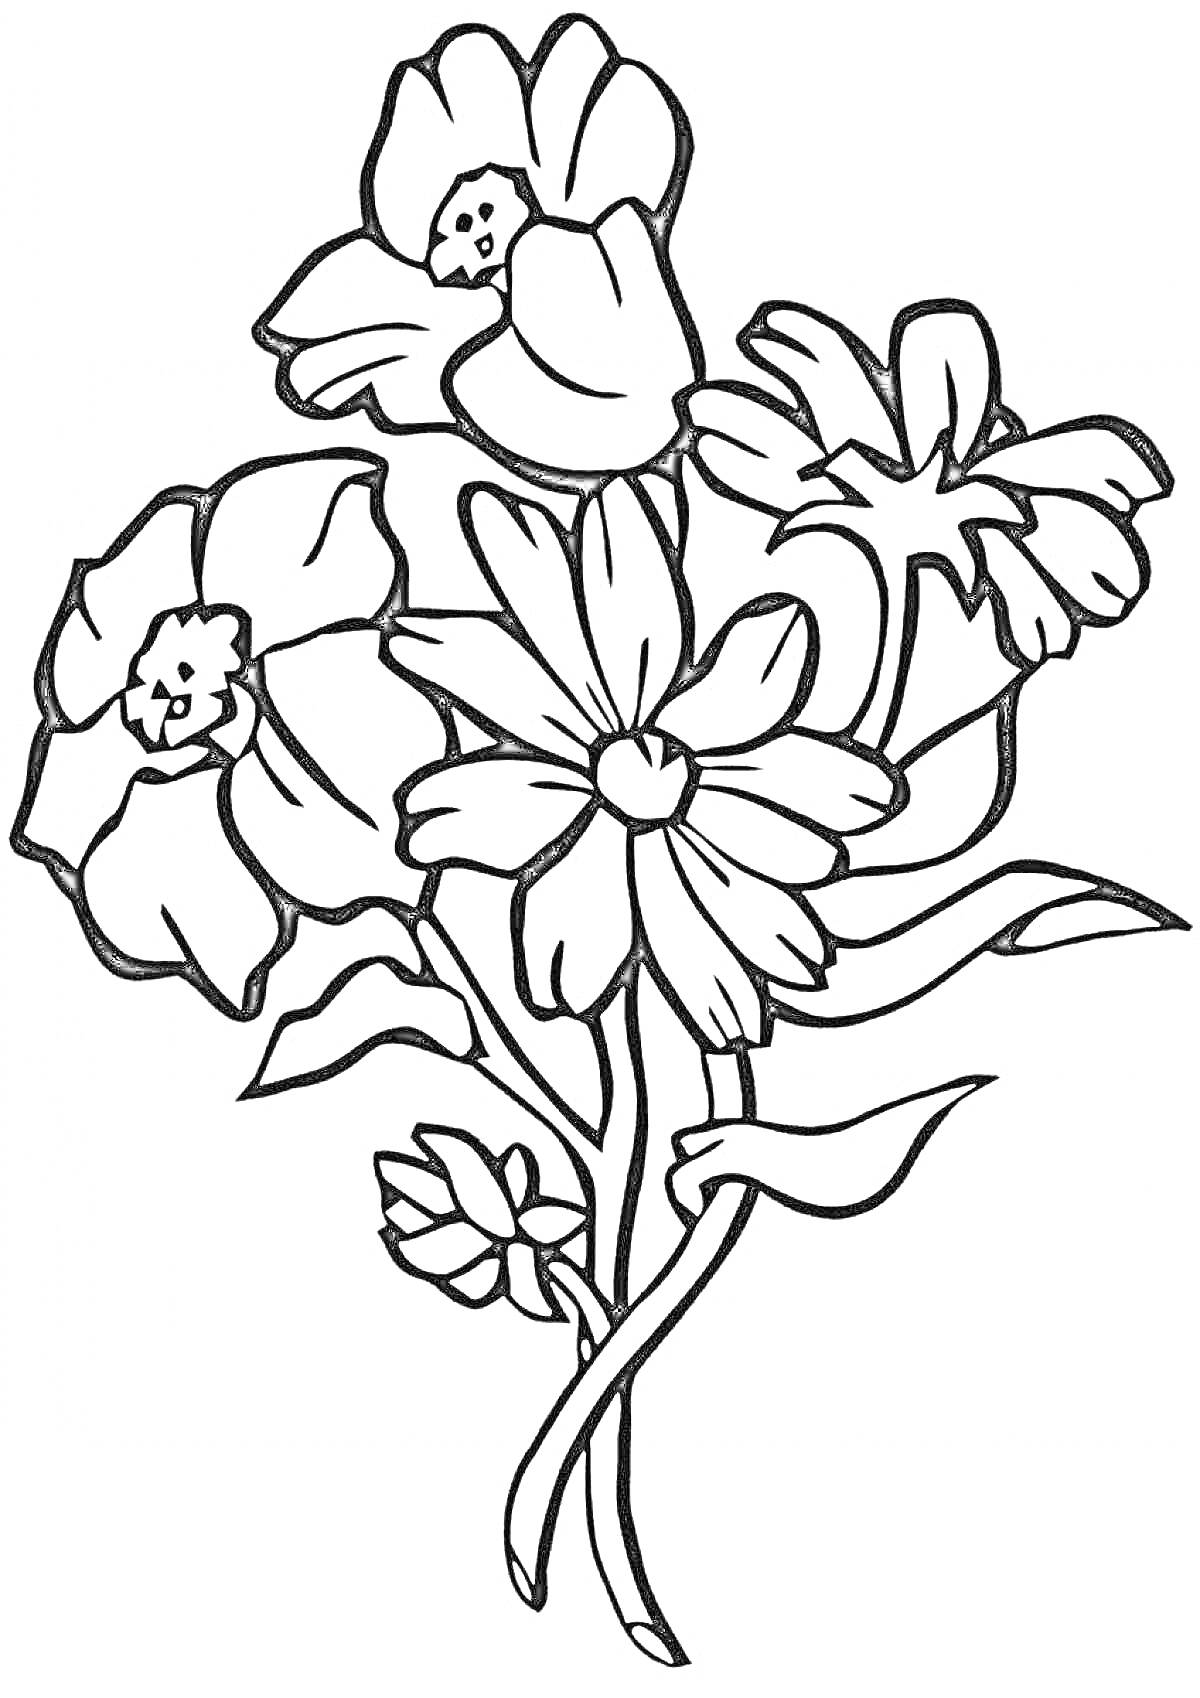 Раскраска Букет цветов с несколькими видами, включая незабудки